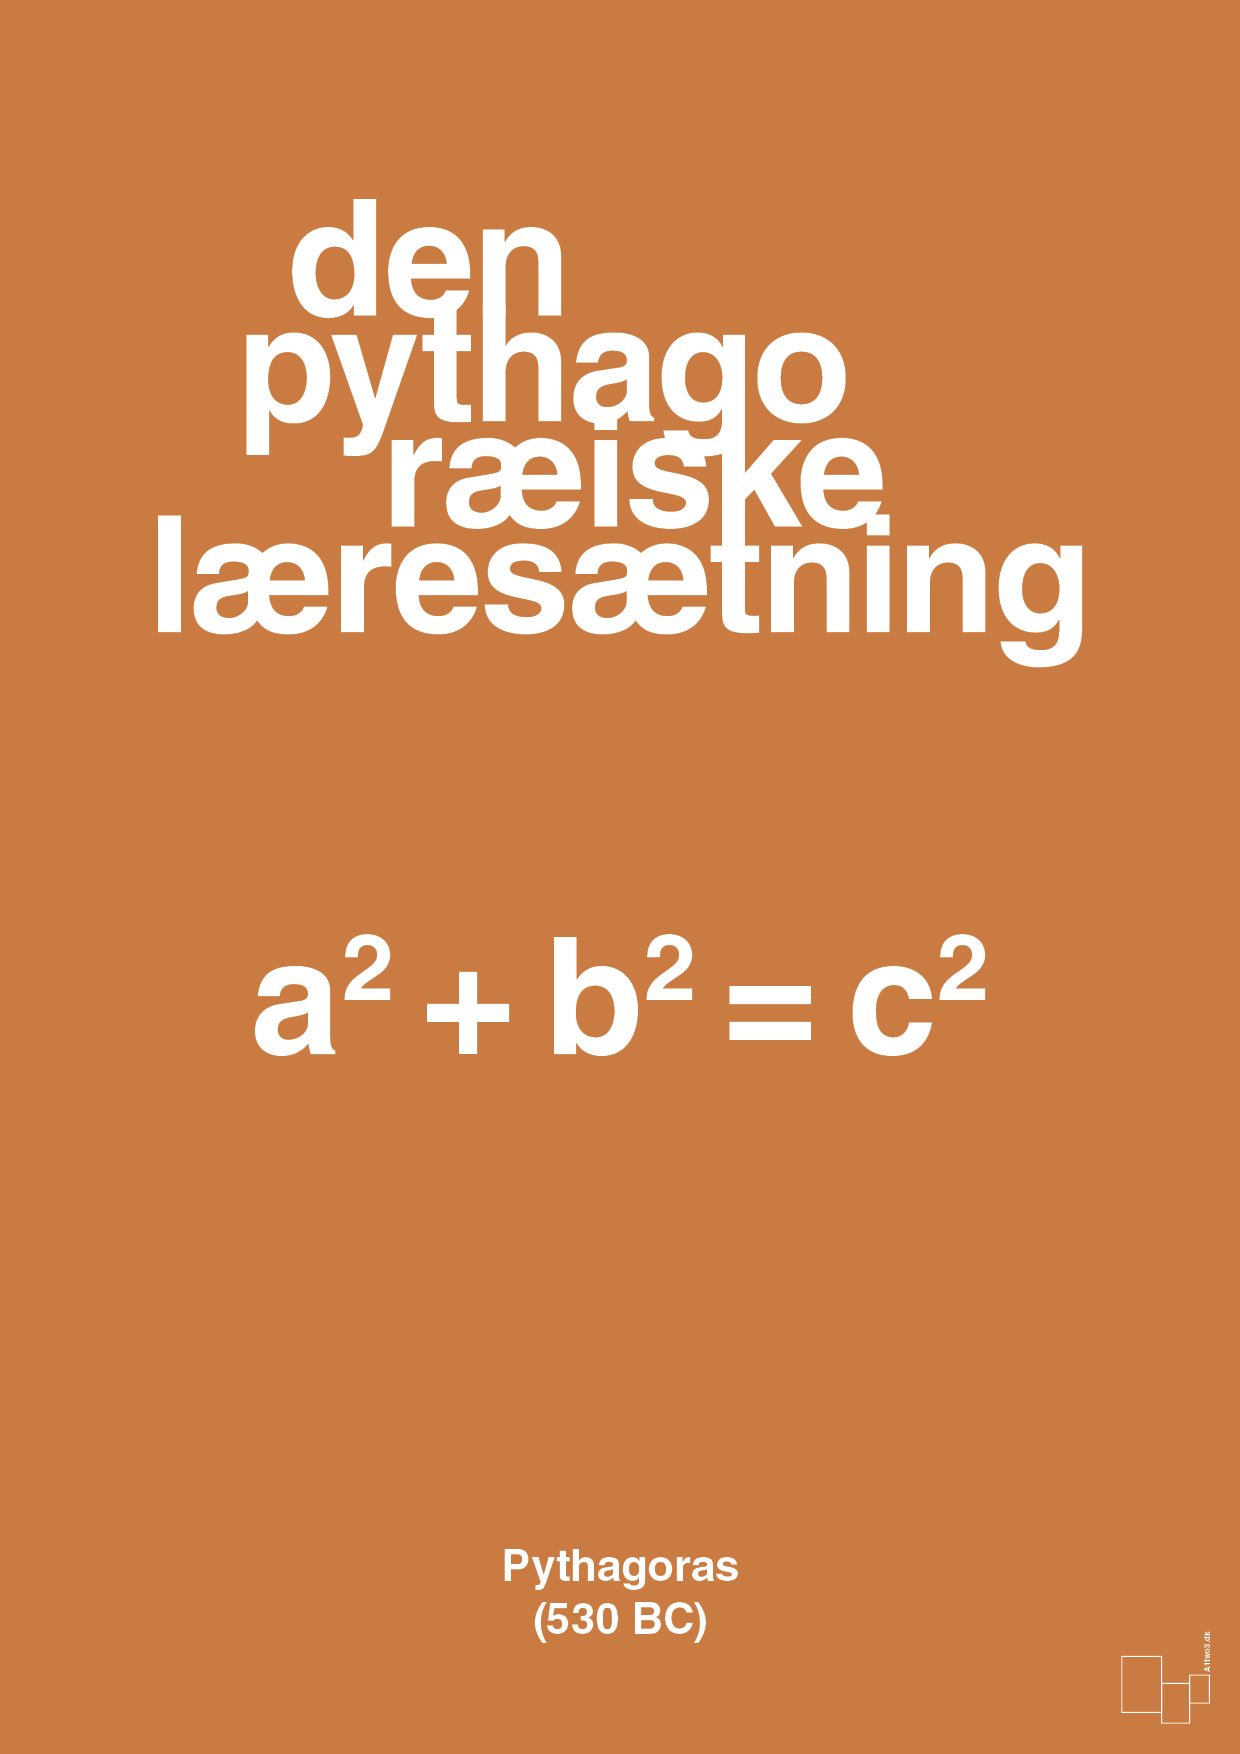 den pythagoræiske læresætning - Plakat med Videnskab i Rumba Orange